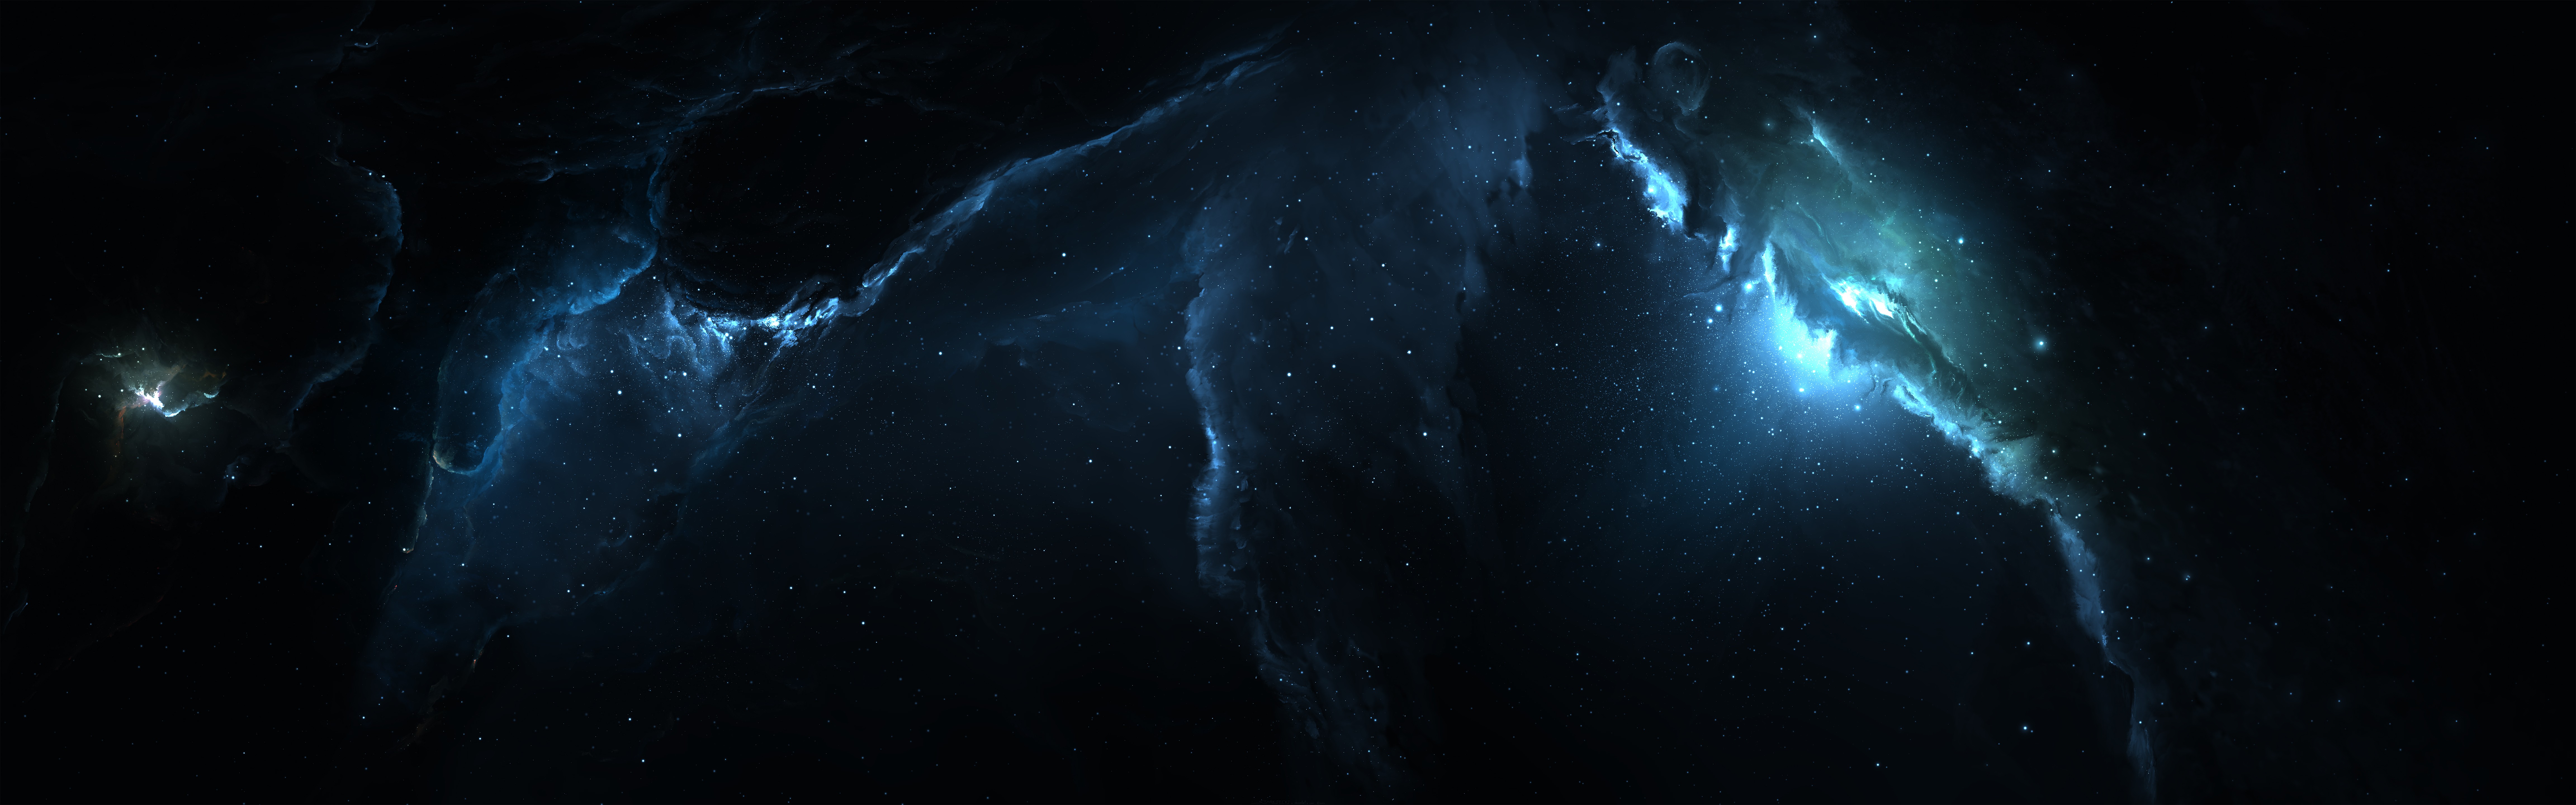 Nebula space digital universe hd 4k 5k 8k 10k 12k HD wallpaper   Wallpaperbetter